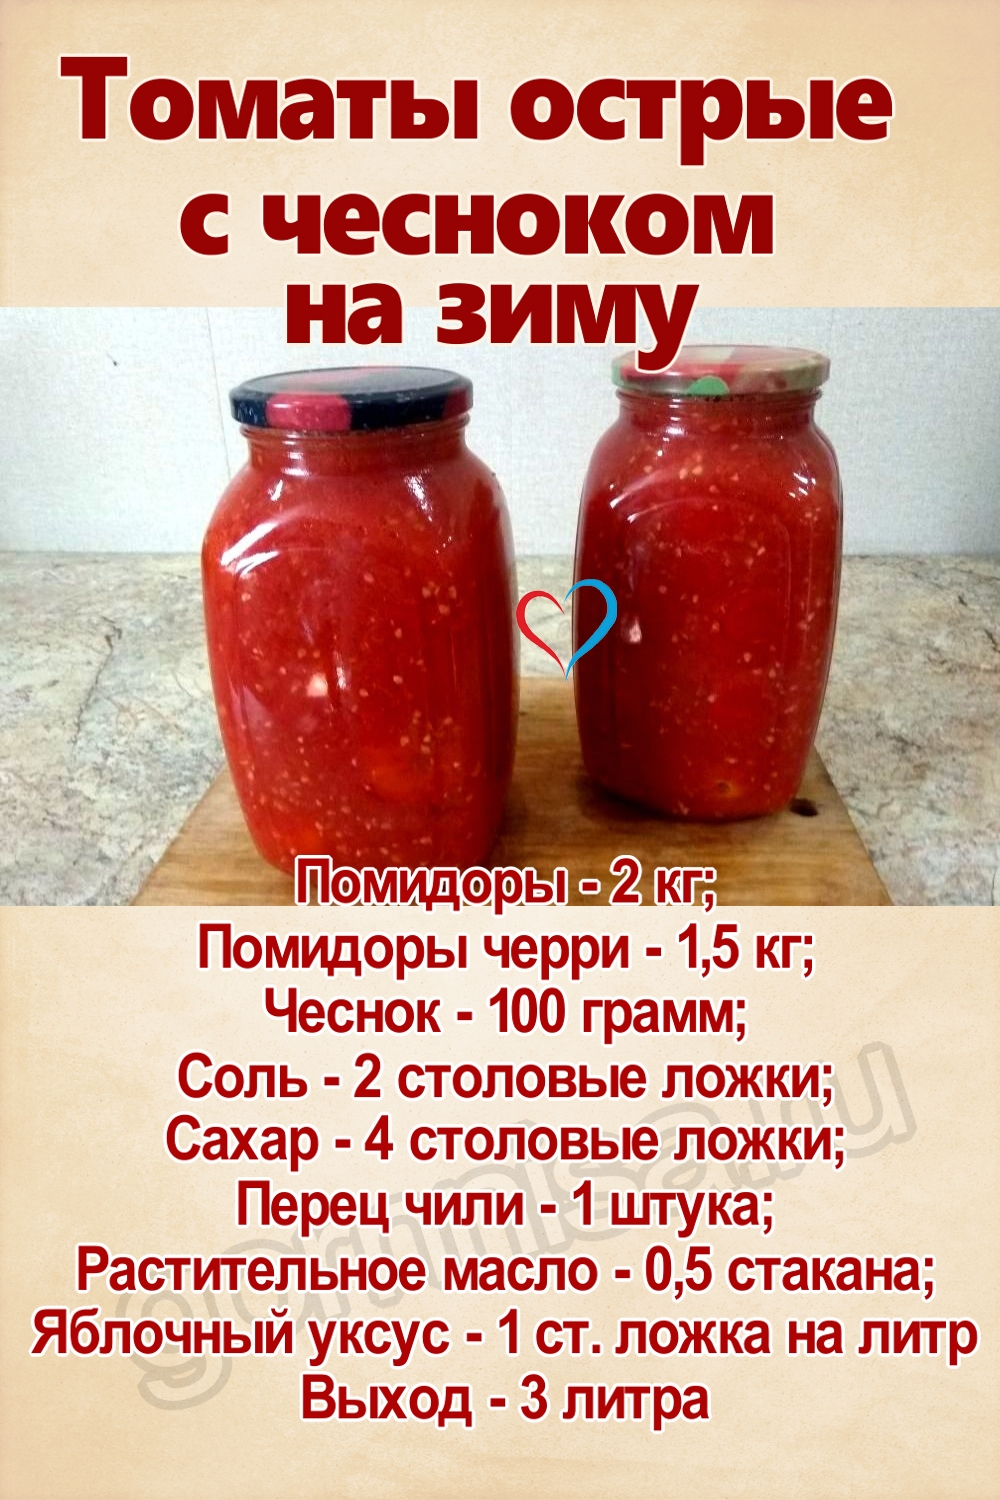 Рецепт недели - томаты острые с чесноком на зиму